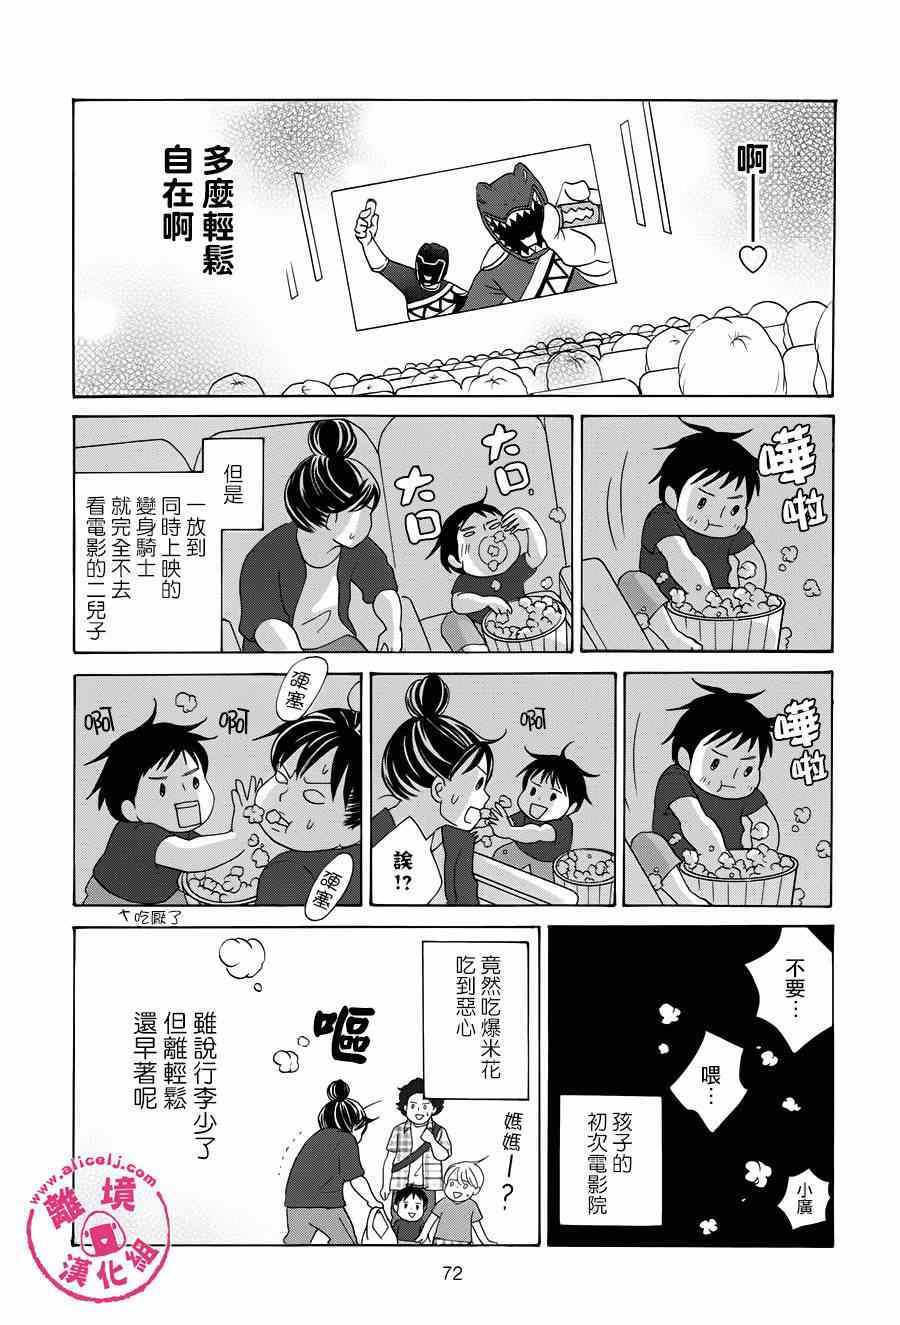 《饭团通信~废柴妈妈日记~》漫画 废柴妈妈日记 022-24集